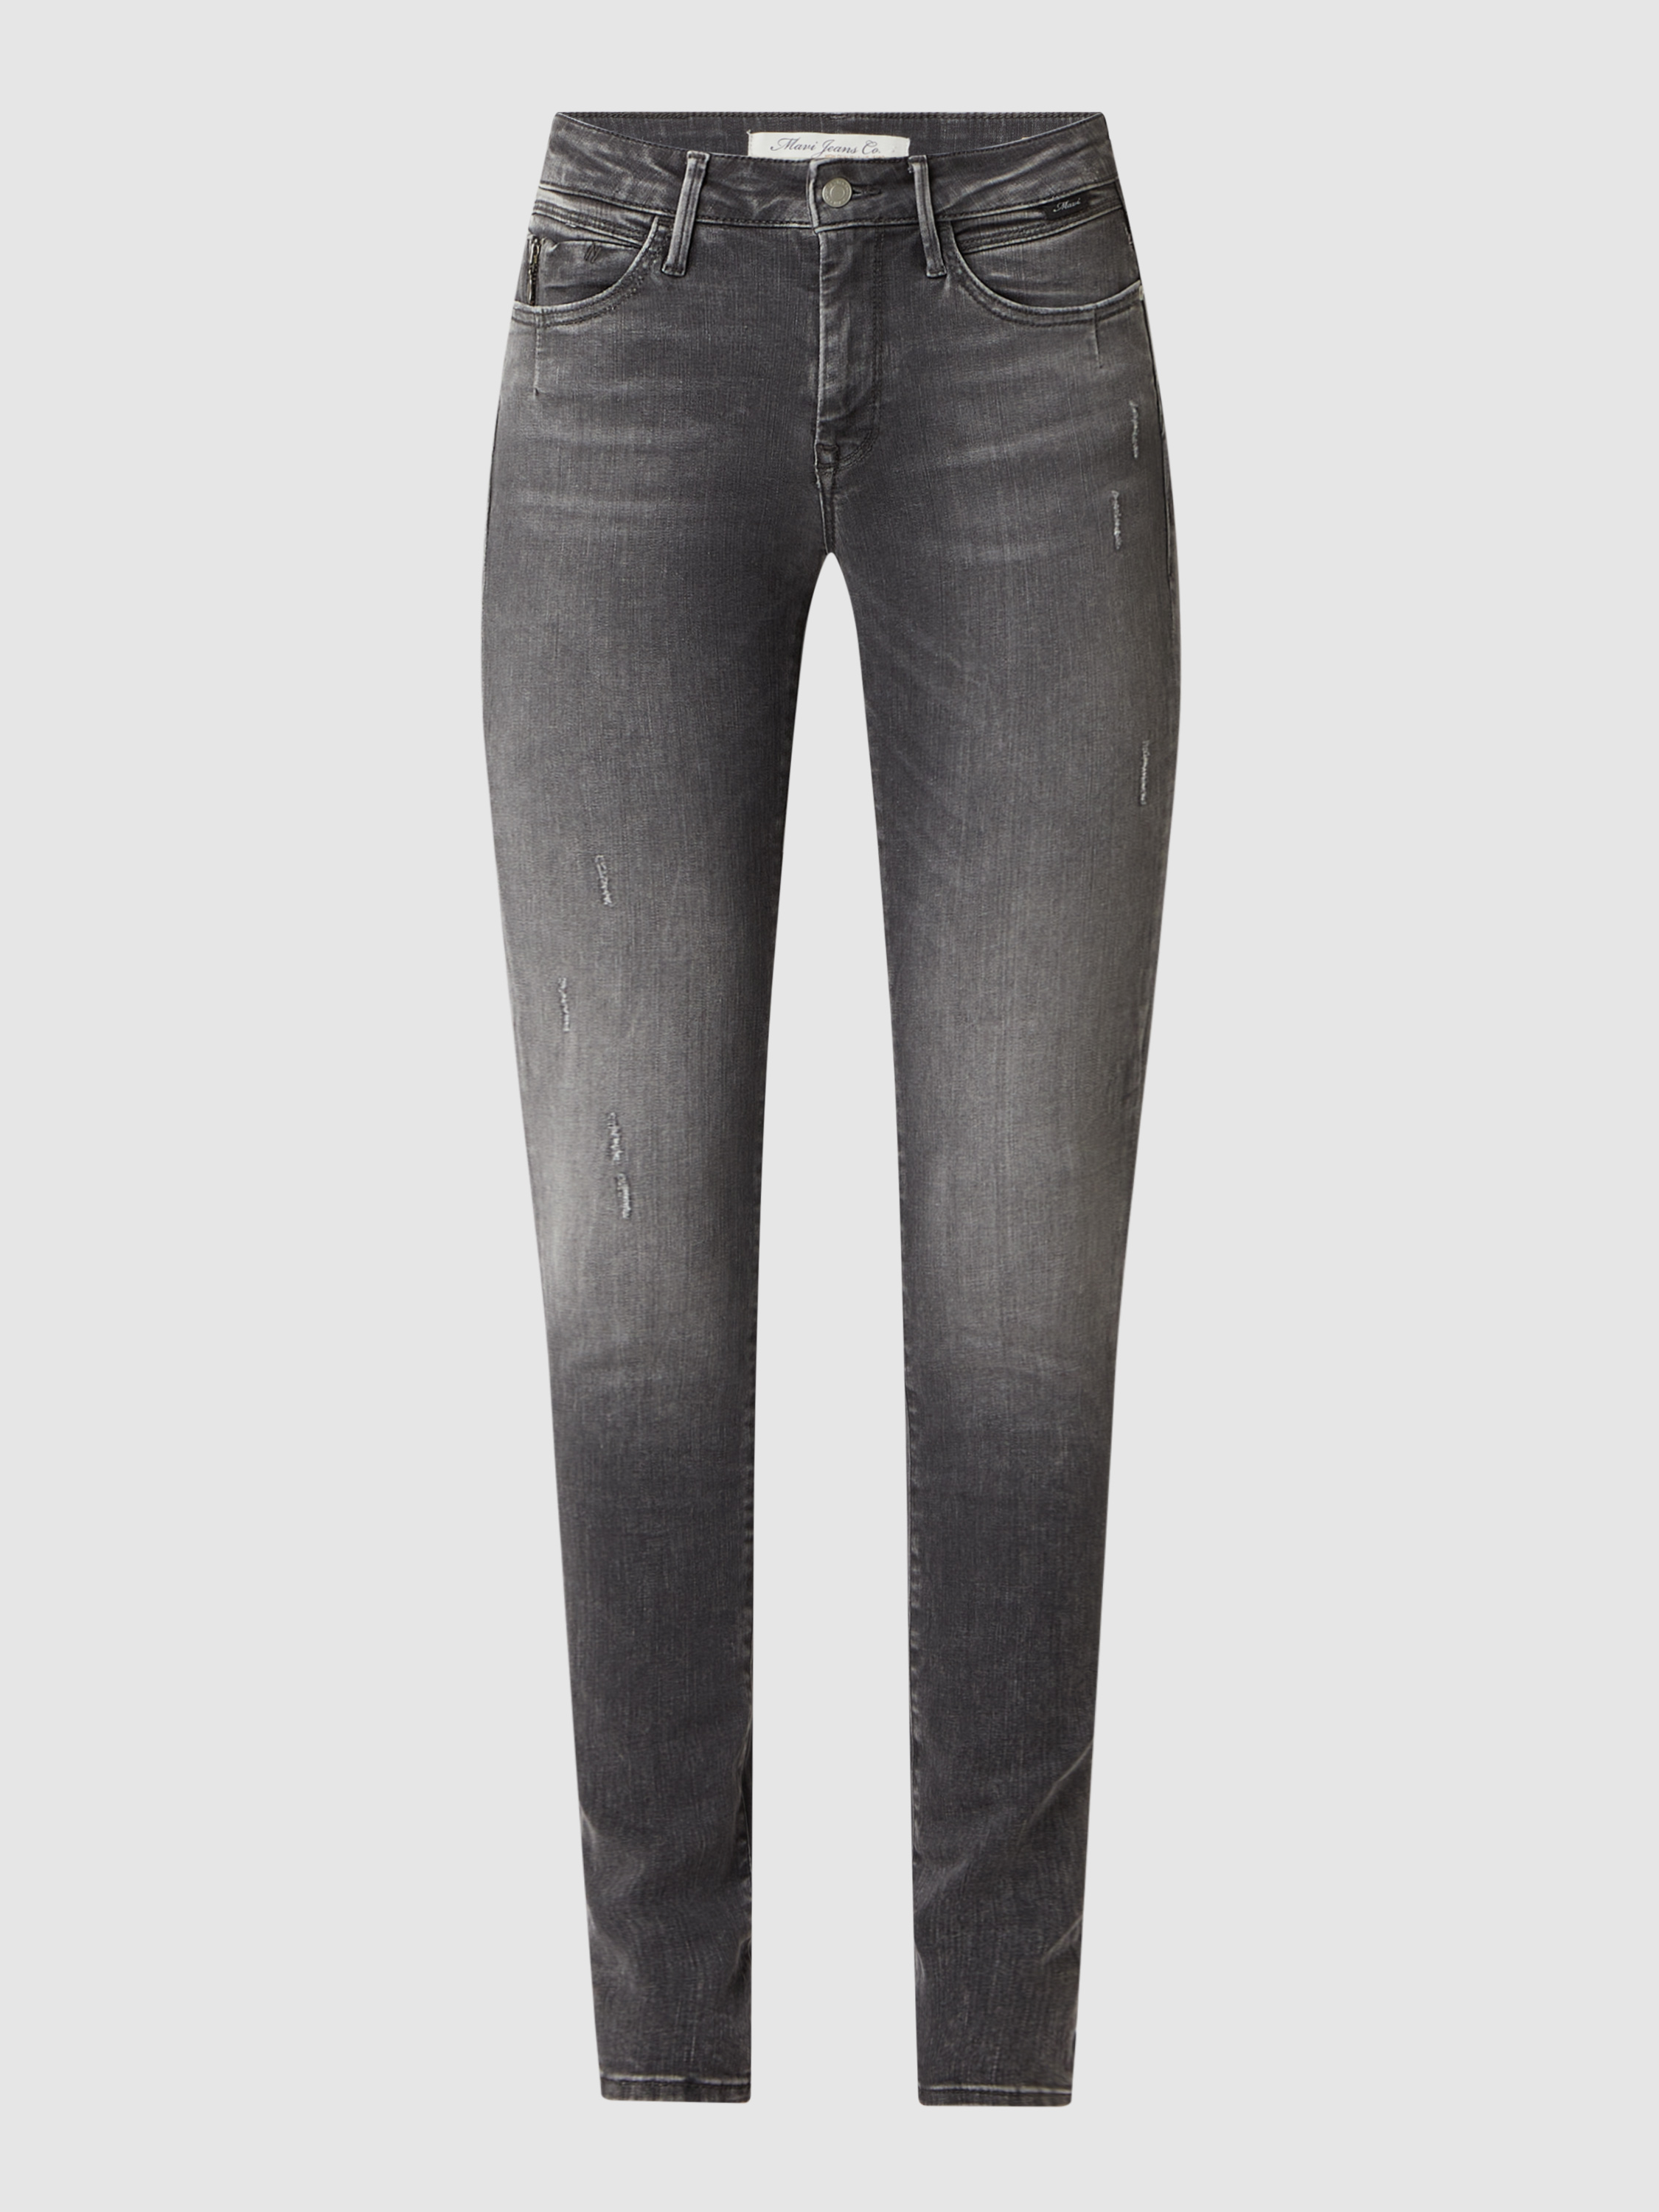 Джинсы женские mavi jeans 1455295 серые 25/32 (доставка из-за рубежа)